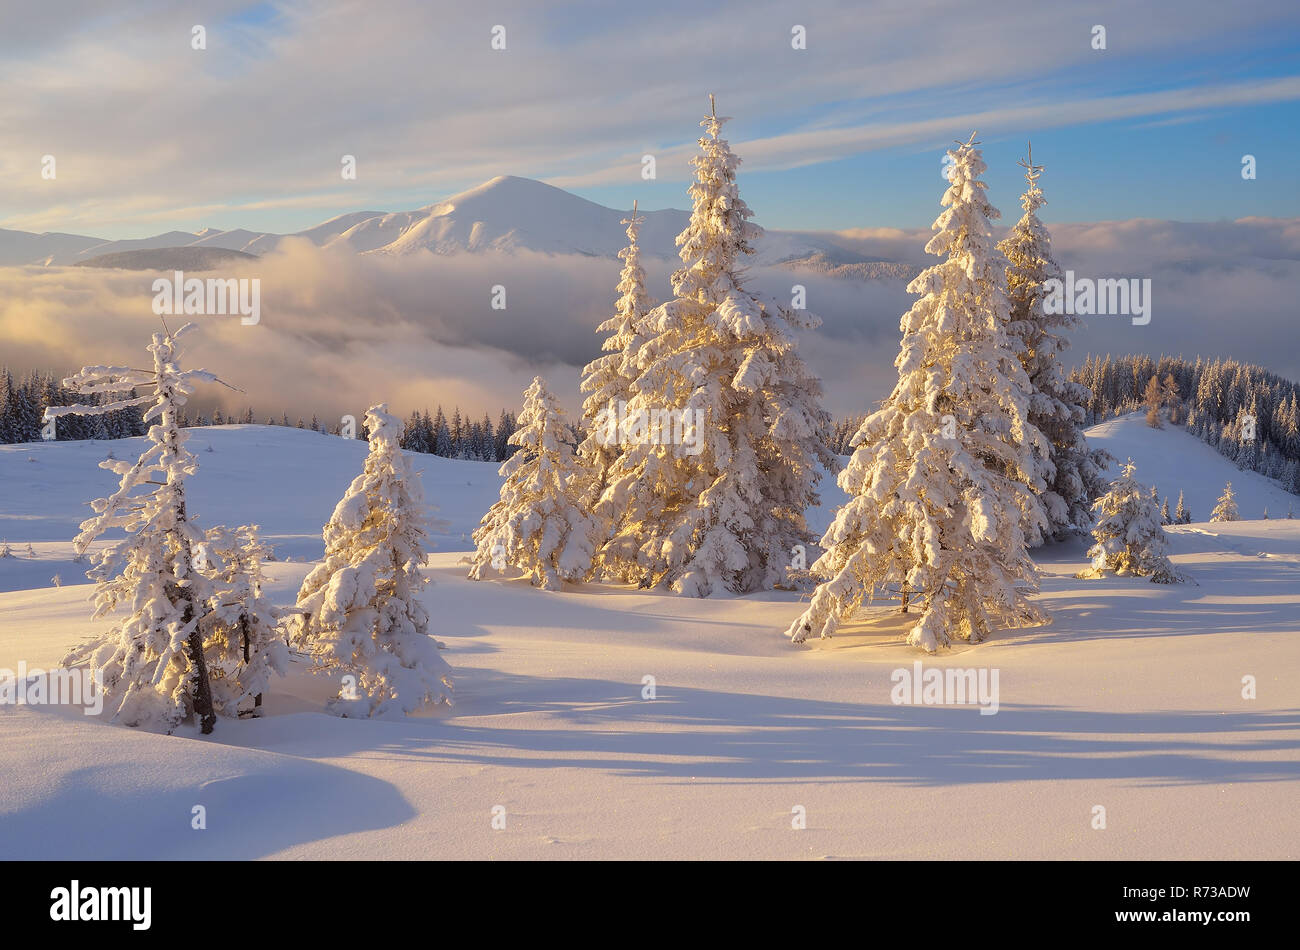 Foto Paesaggi Di Natale.Favoloso Paesaggio Di Natale Abeti Sotto La Neve Belle Montagne Invernali Foto Stock Alamy